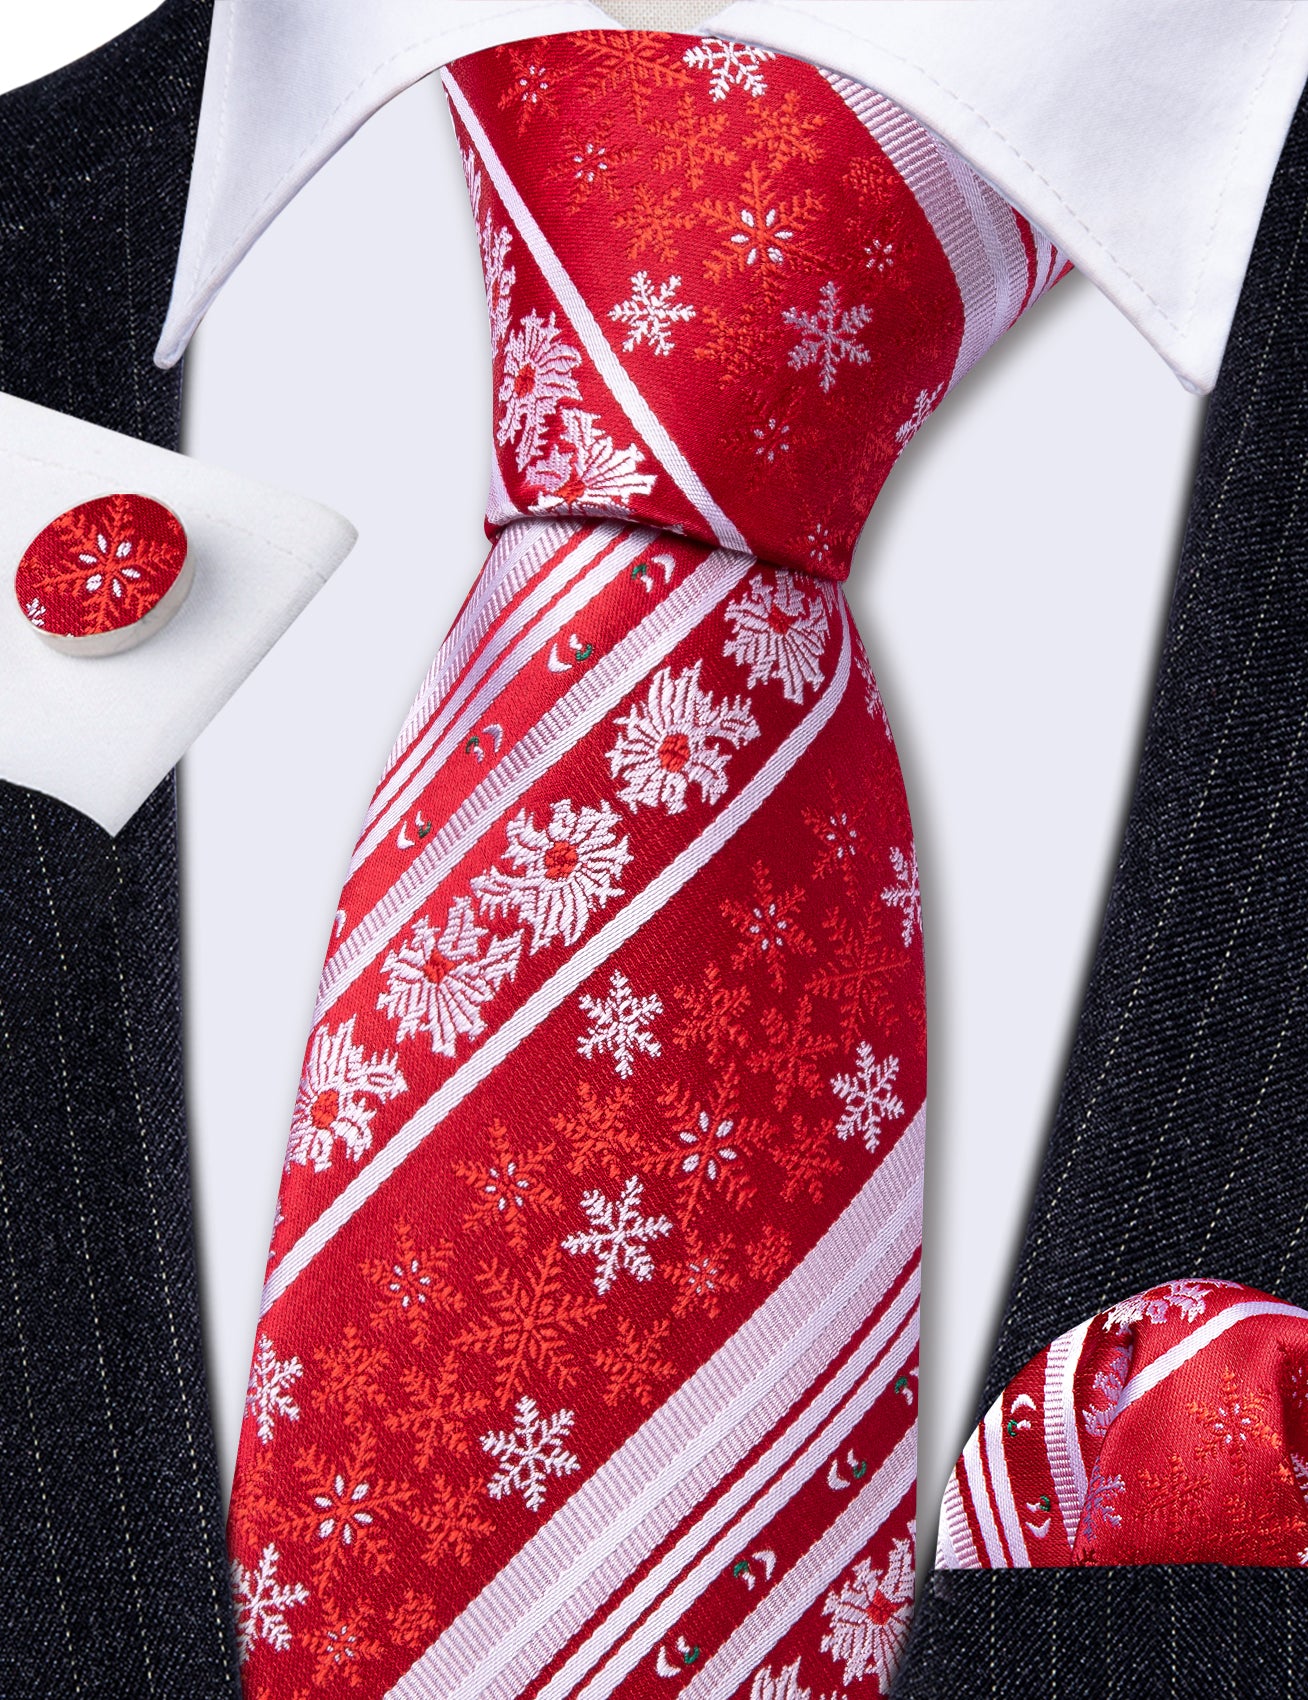 Christmas Red White Xmas Snowflake Pattern Mens Tie Hanky Cufflinks Set